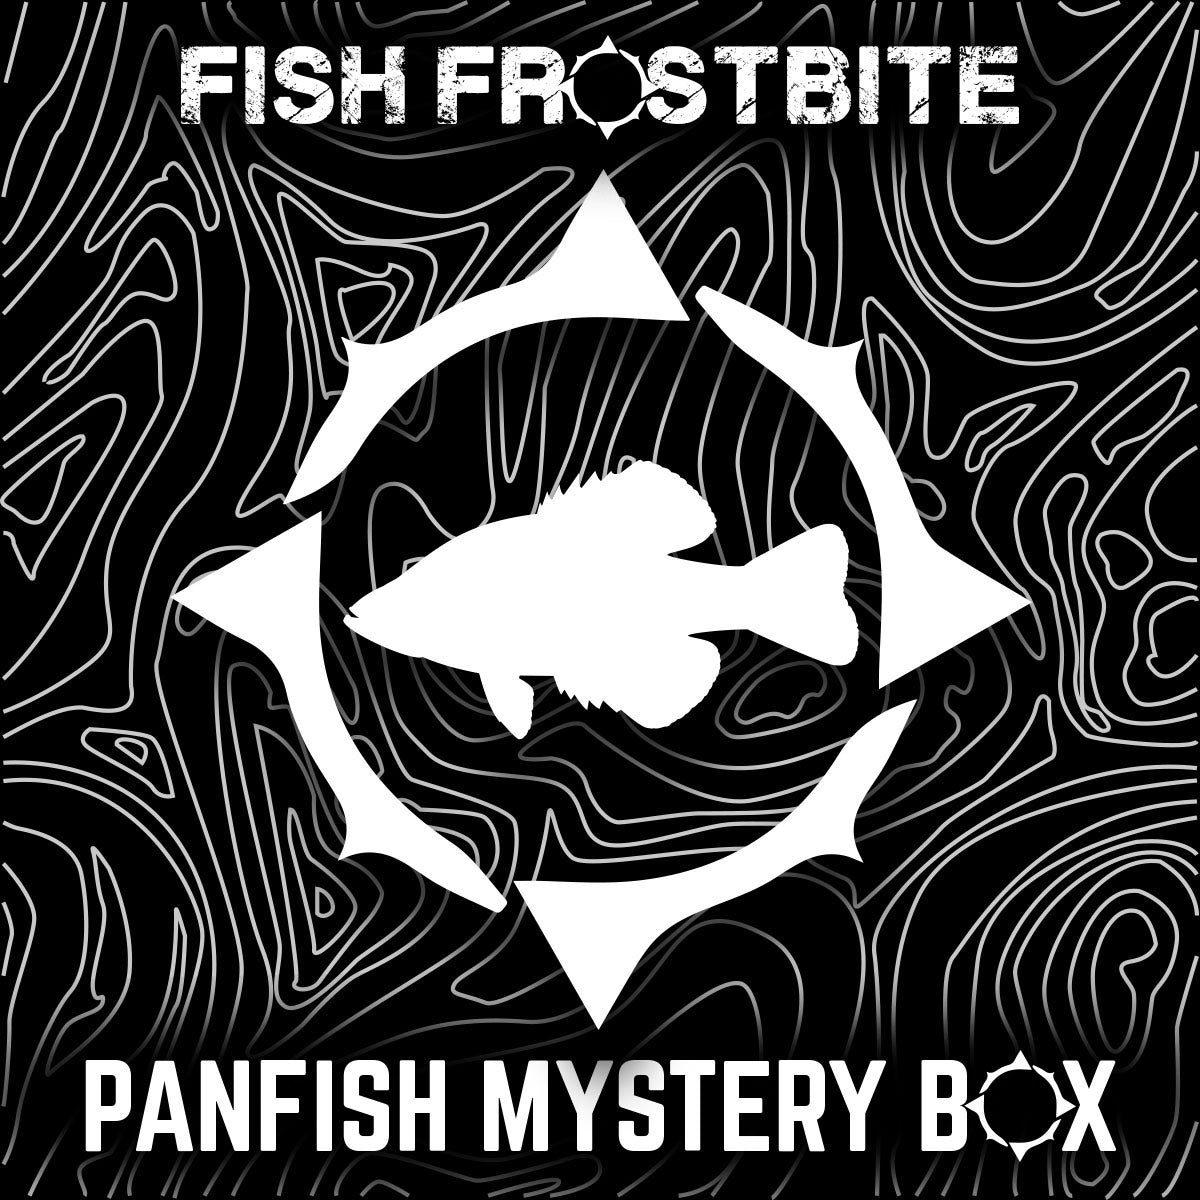 Panfish Mystery Box – Fish Frostbite USA